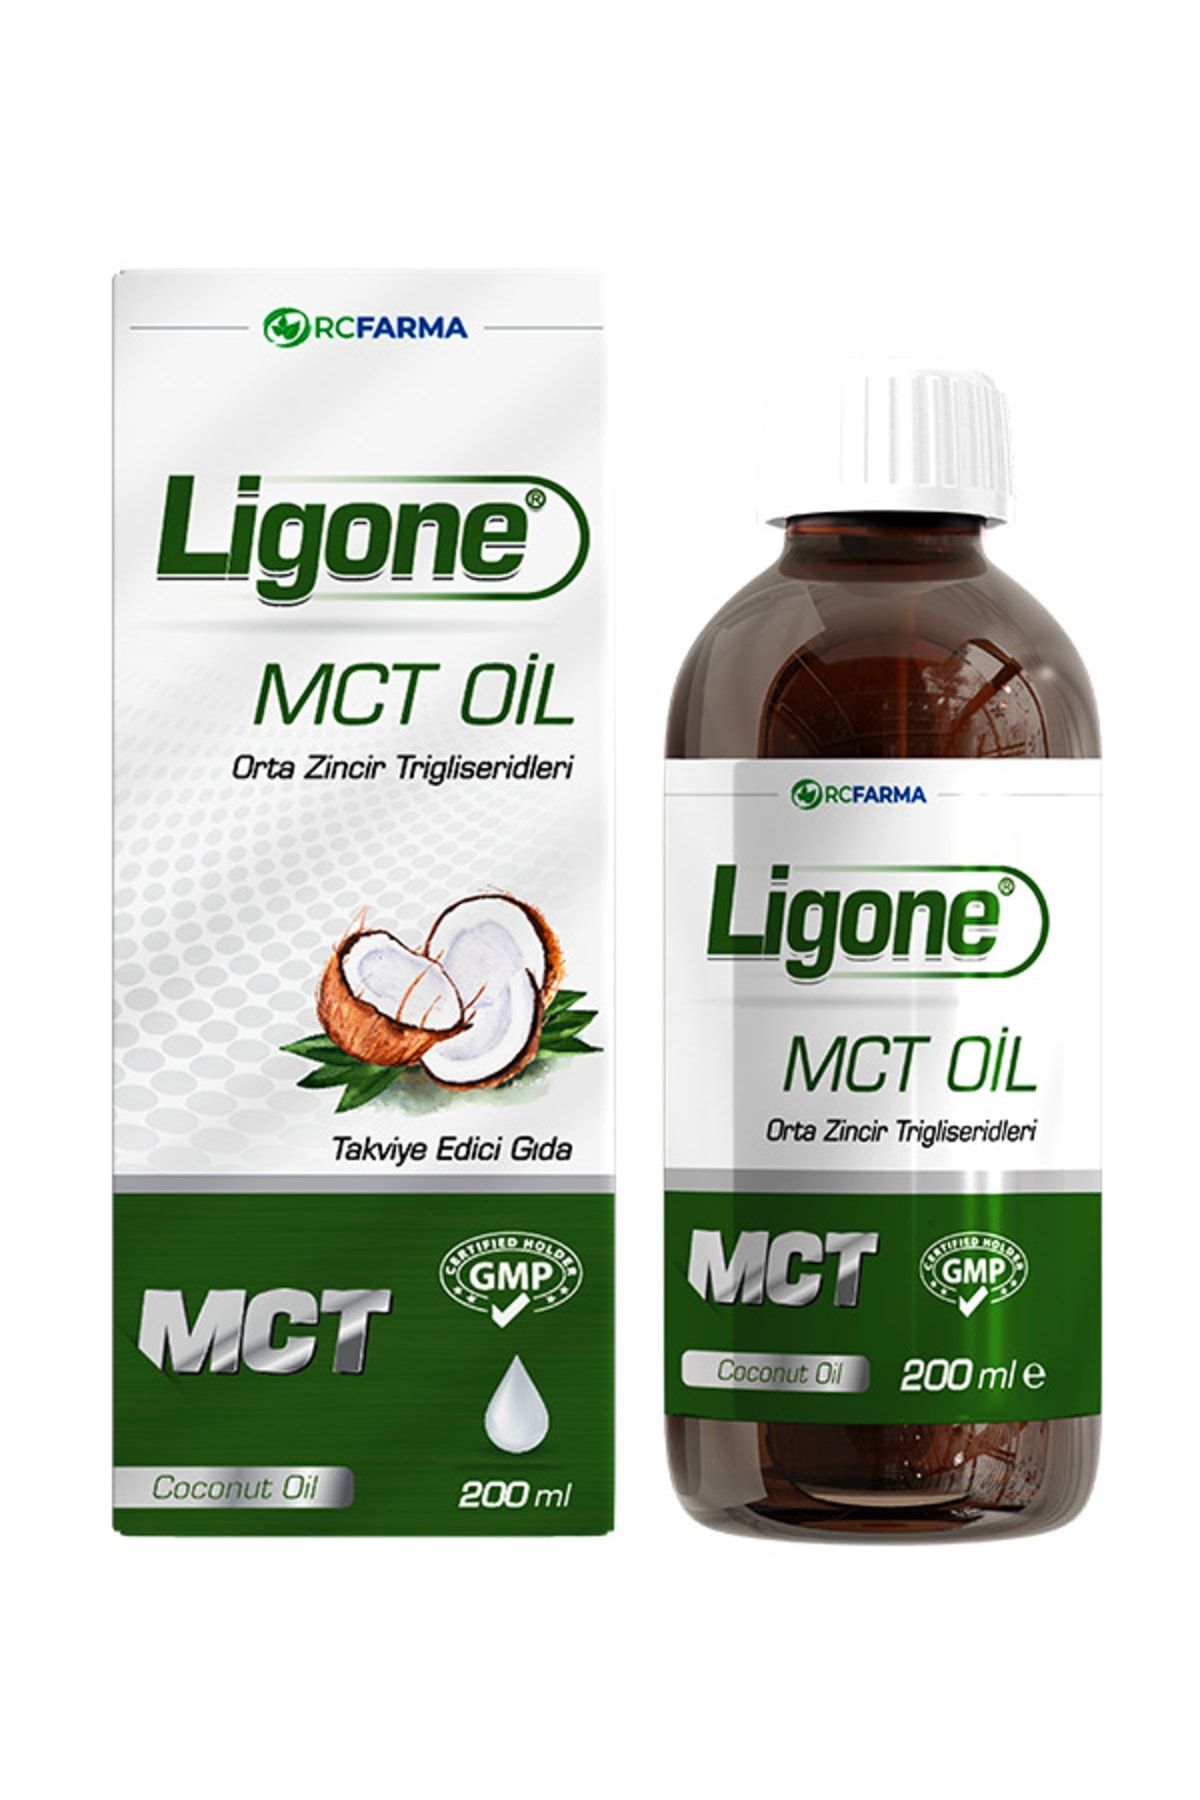 Ligone Mct Oil 200 Ml